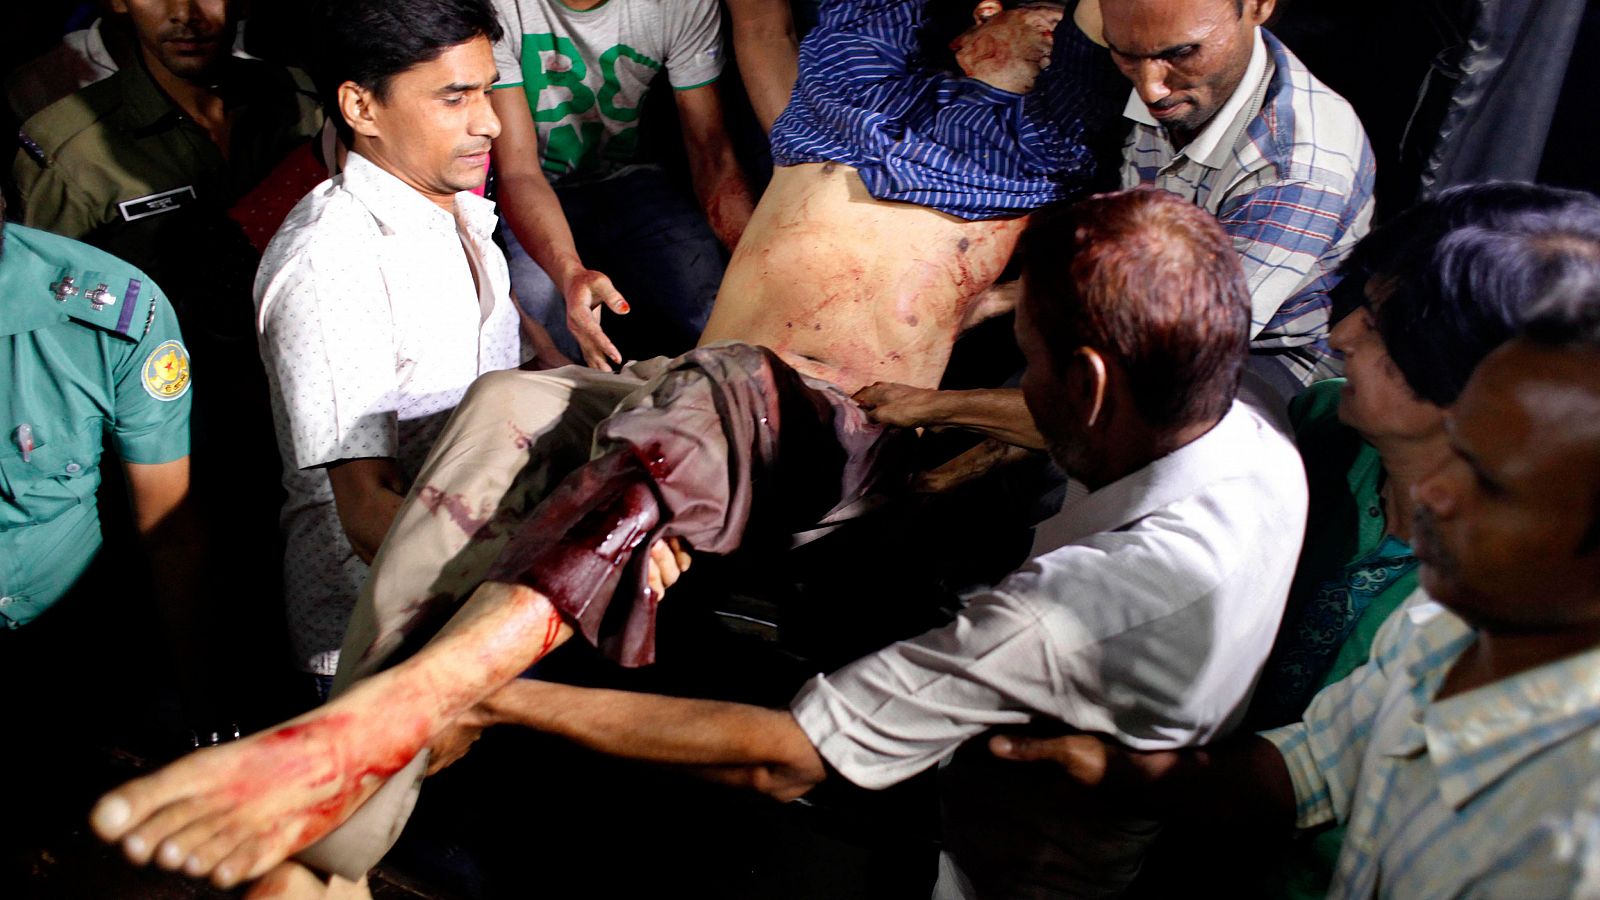 El cuerpo de Arefin Dipan es trasladado al hospital tras haber sido atacado a machetazos.